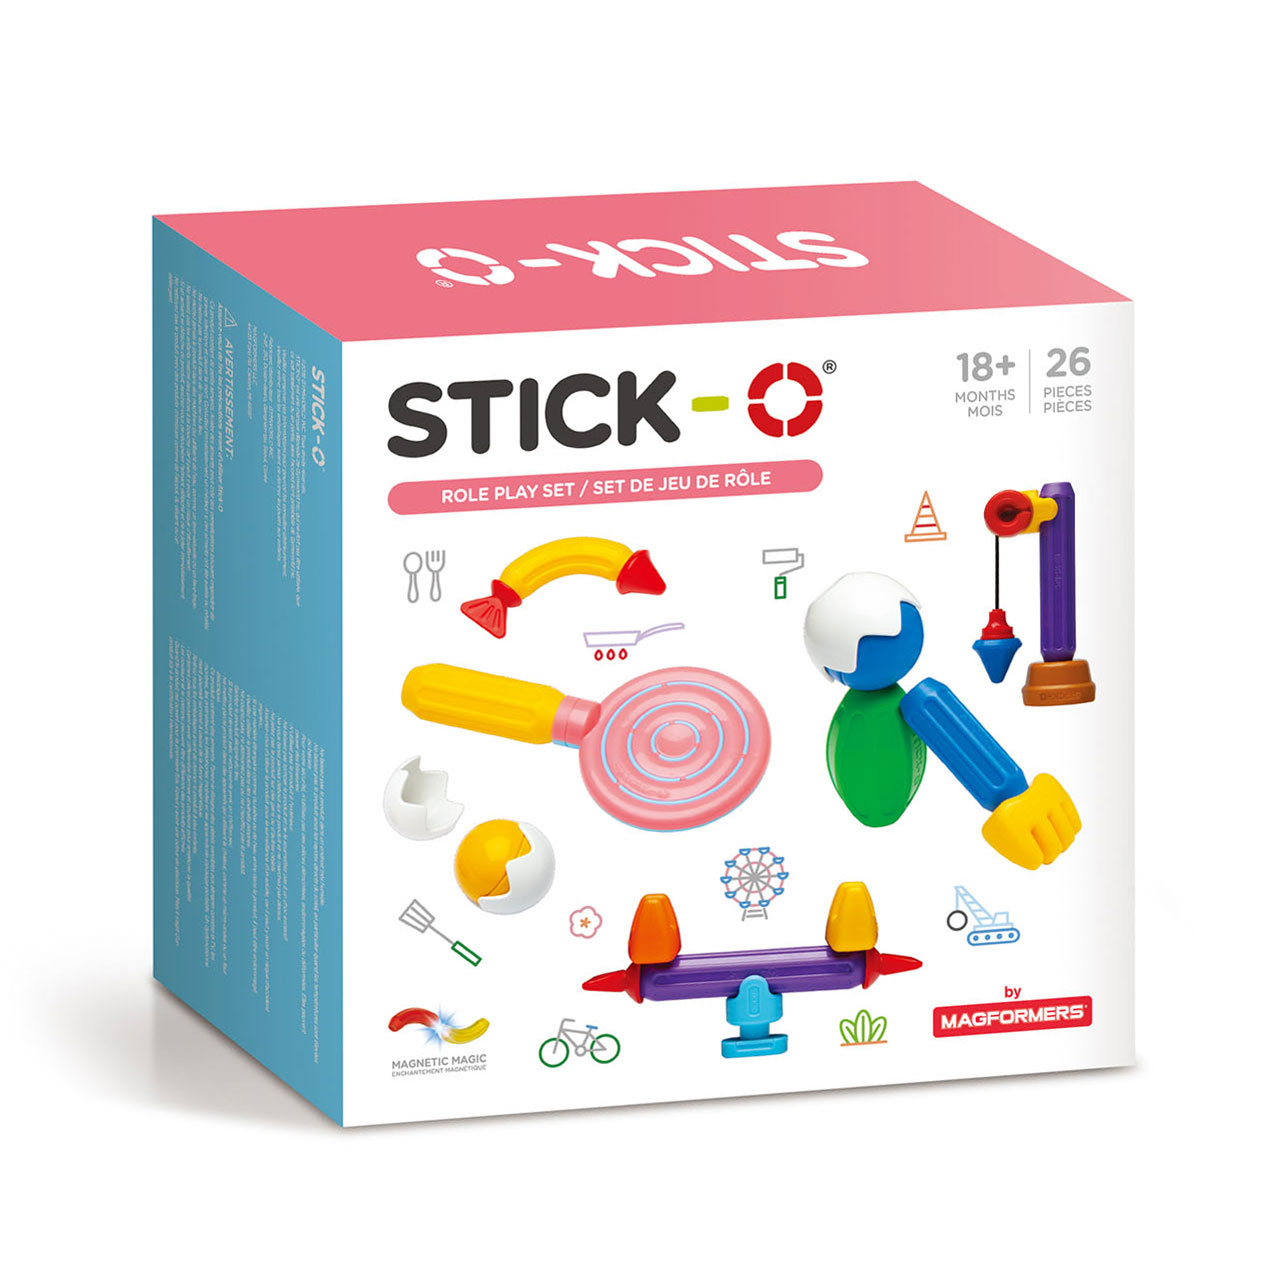 Stick-O Role Play Set, 26 pcs. Thimble